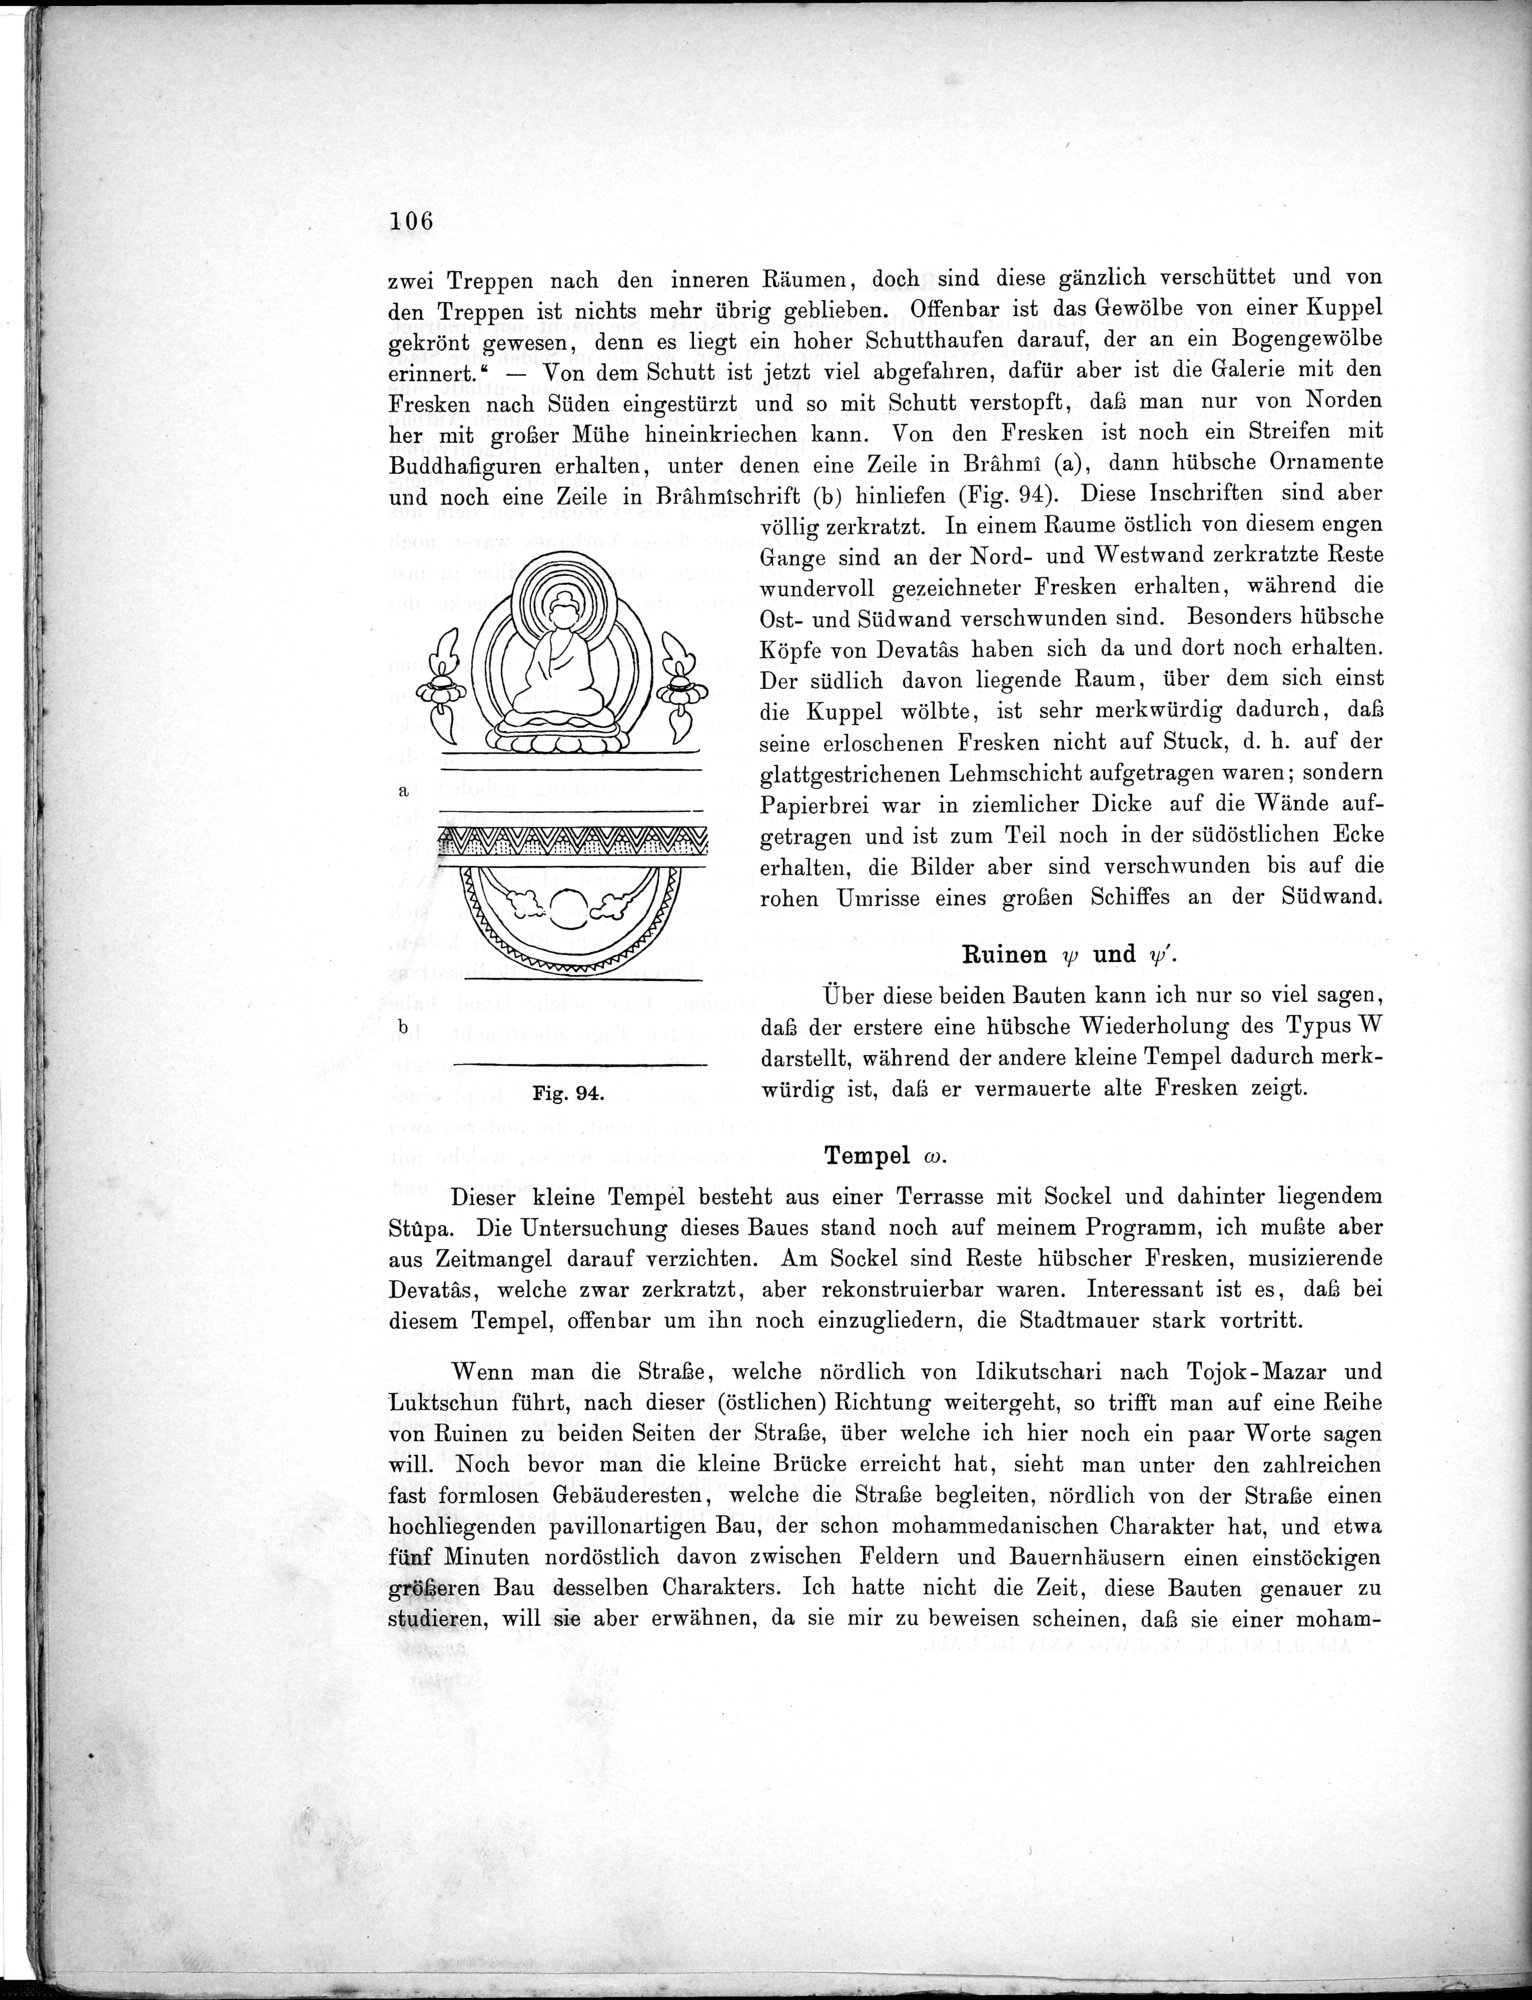 Bericht über archäologische Arbeiten in Idikutschari und Umgebung im Winter 1902-1903 : vol.1 / Page 116 (Grayscale High Resolution Image)